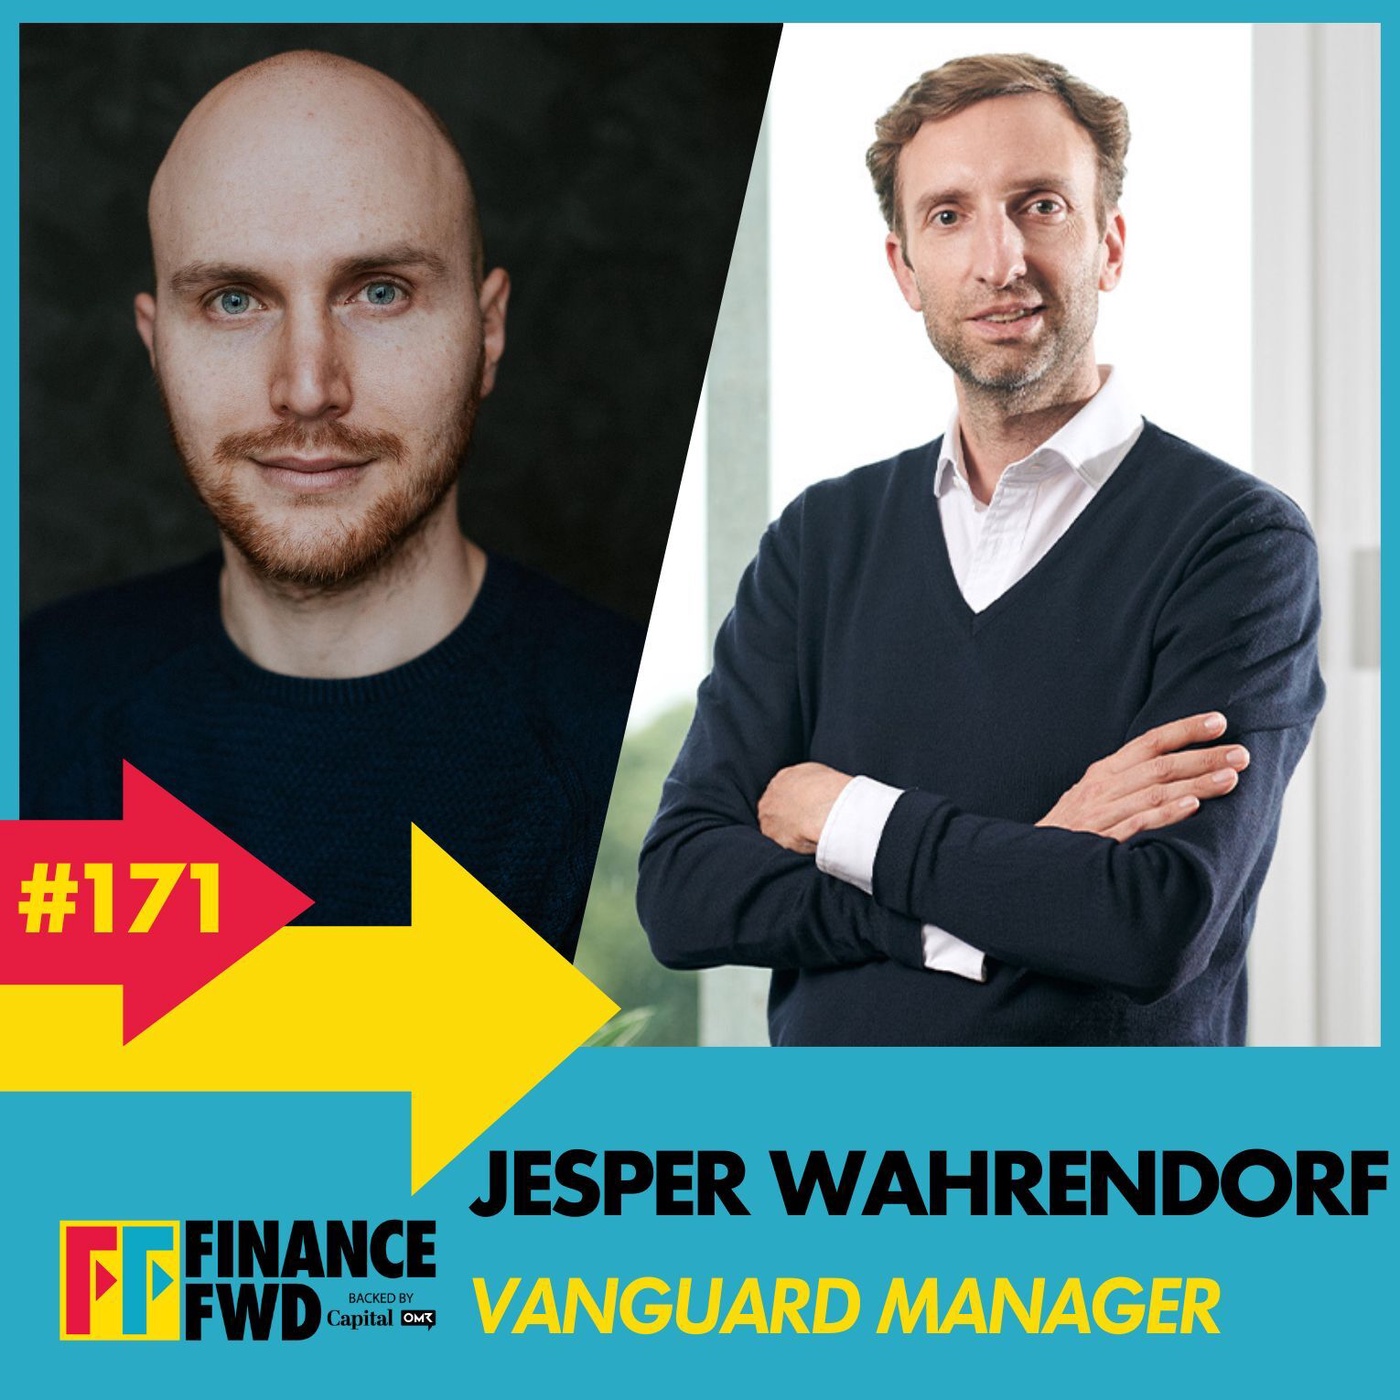 FinanceFWD #171 mit Vanguard-Manager Jesper Wahrendorf